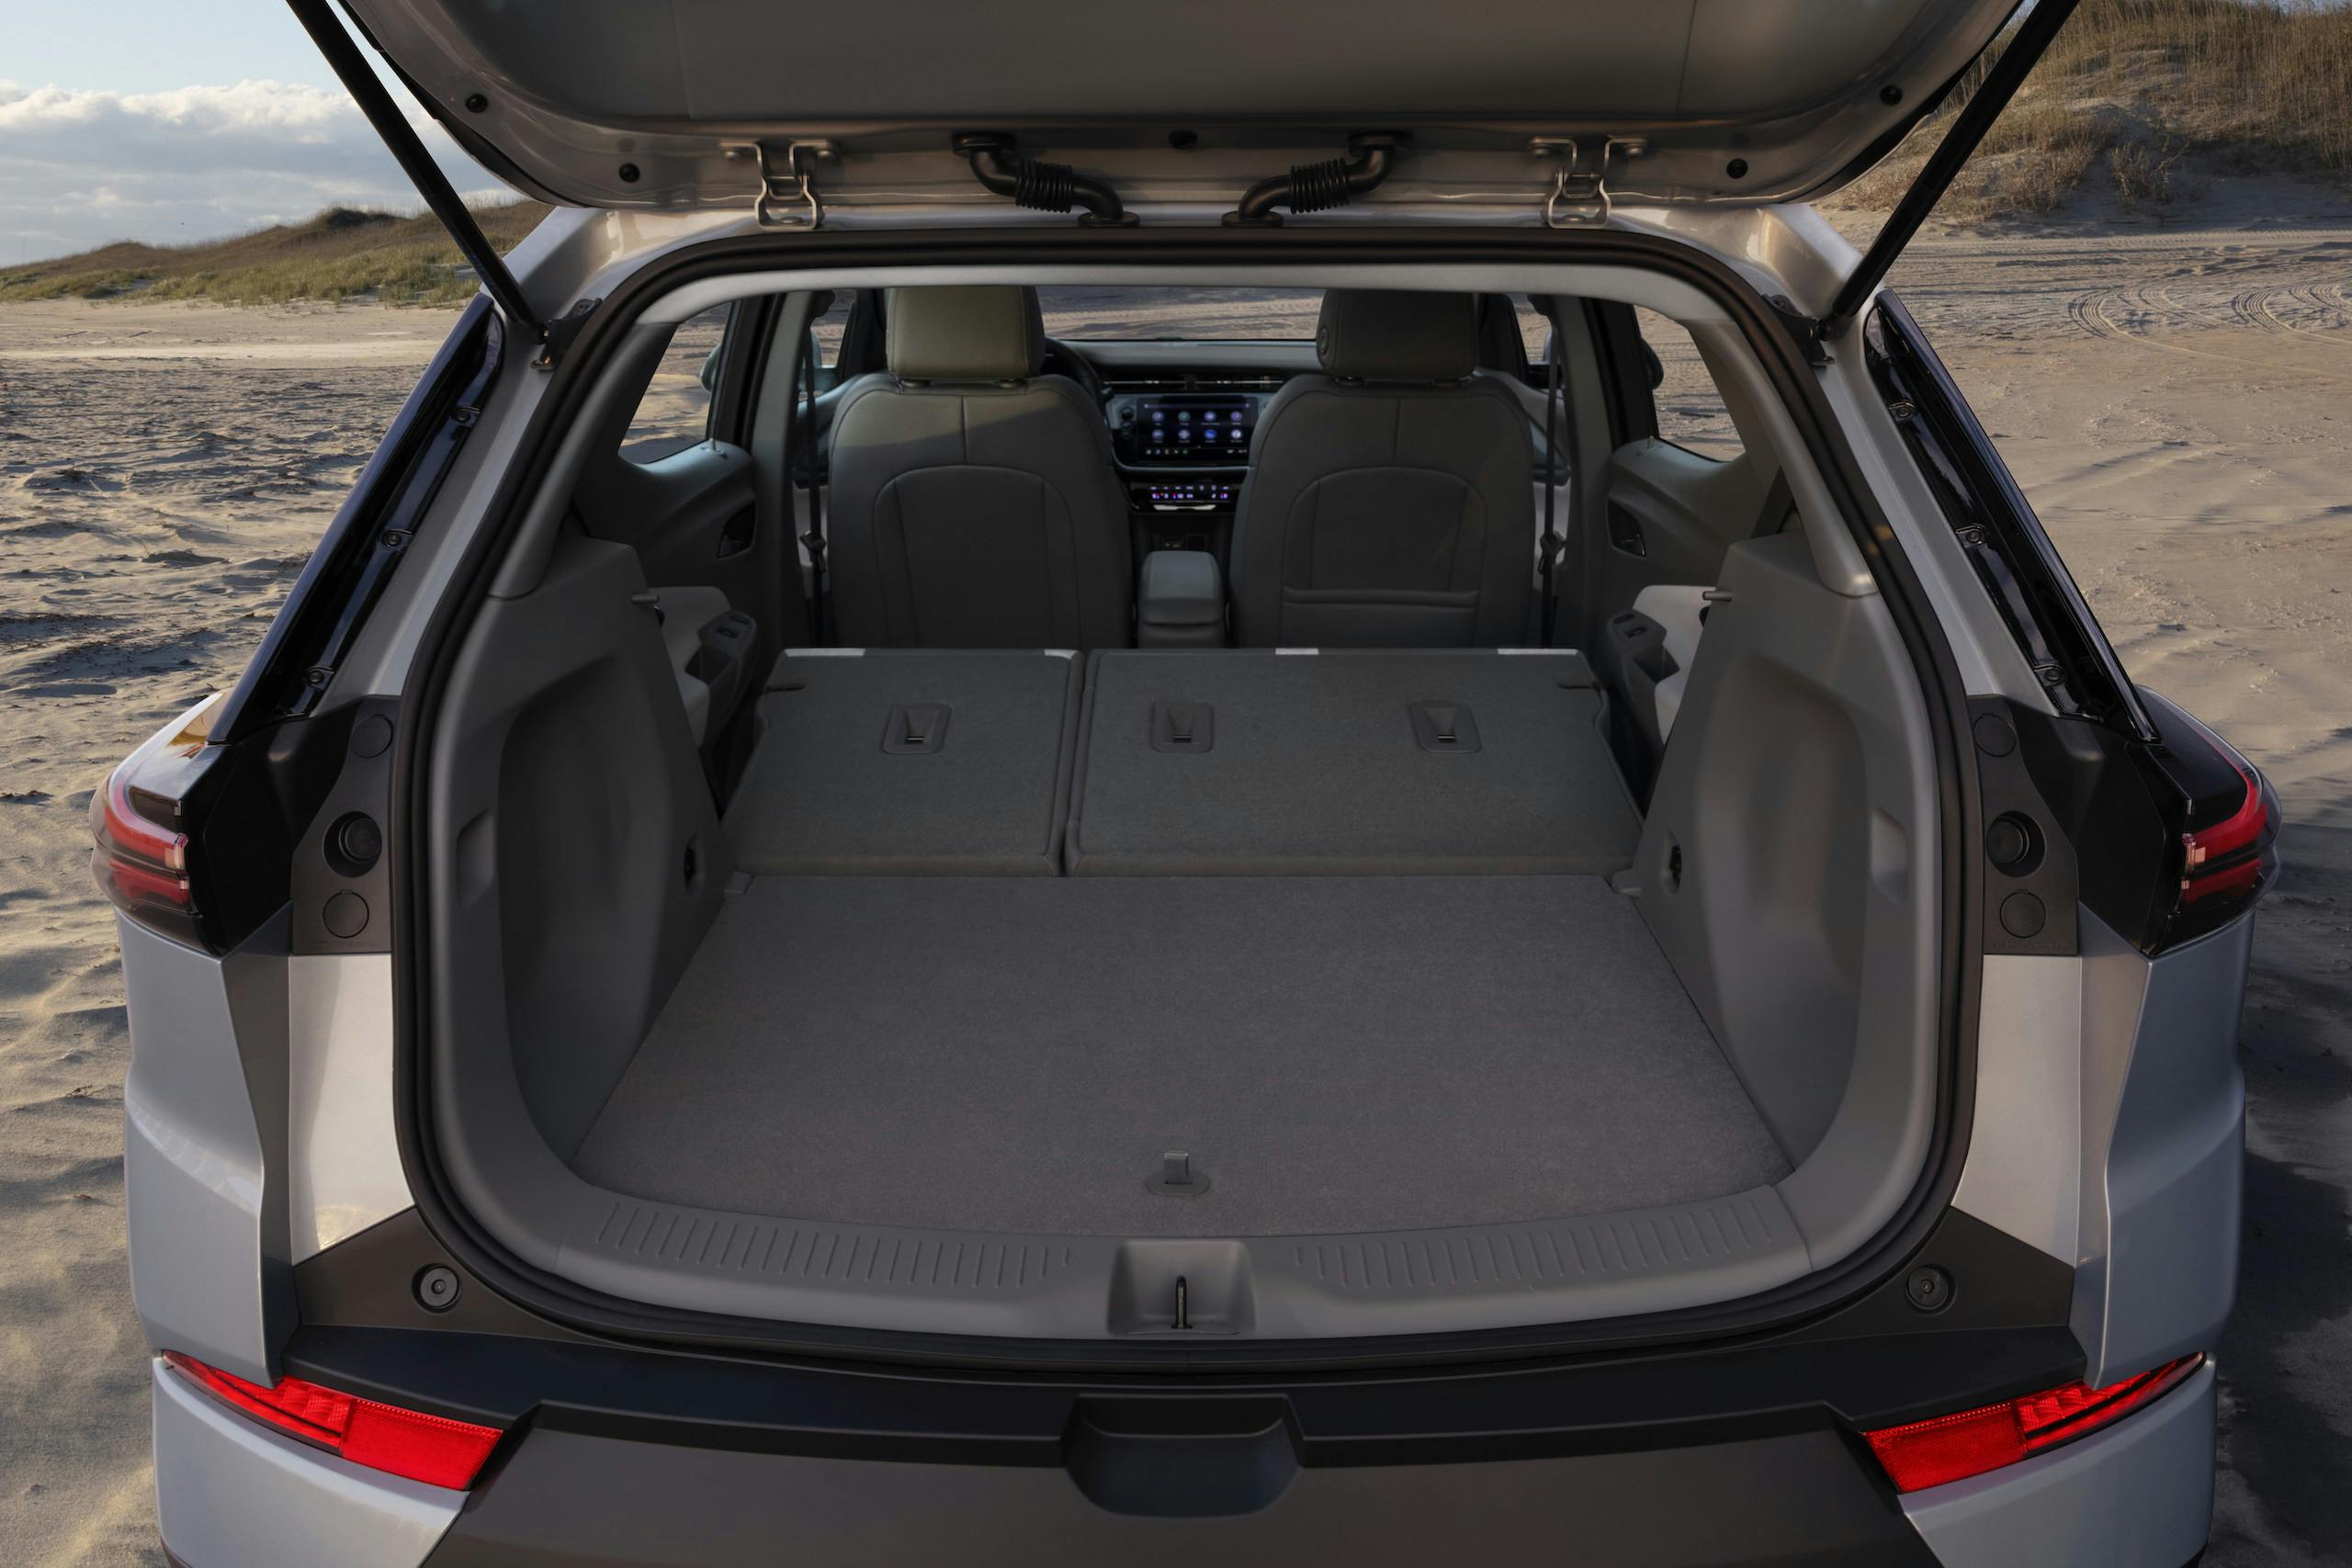 2022 Chevrolet Bolt EUV rear cargo capacity seats folded